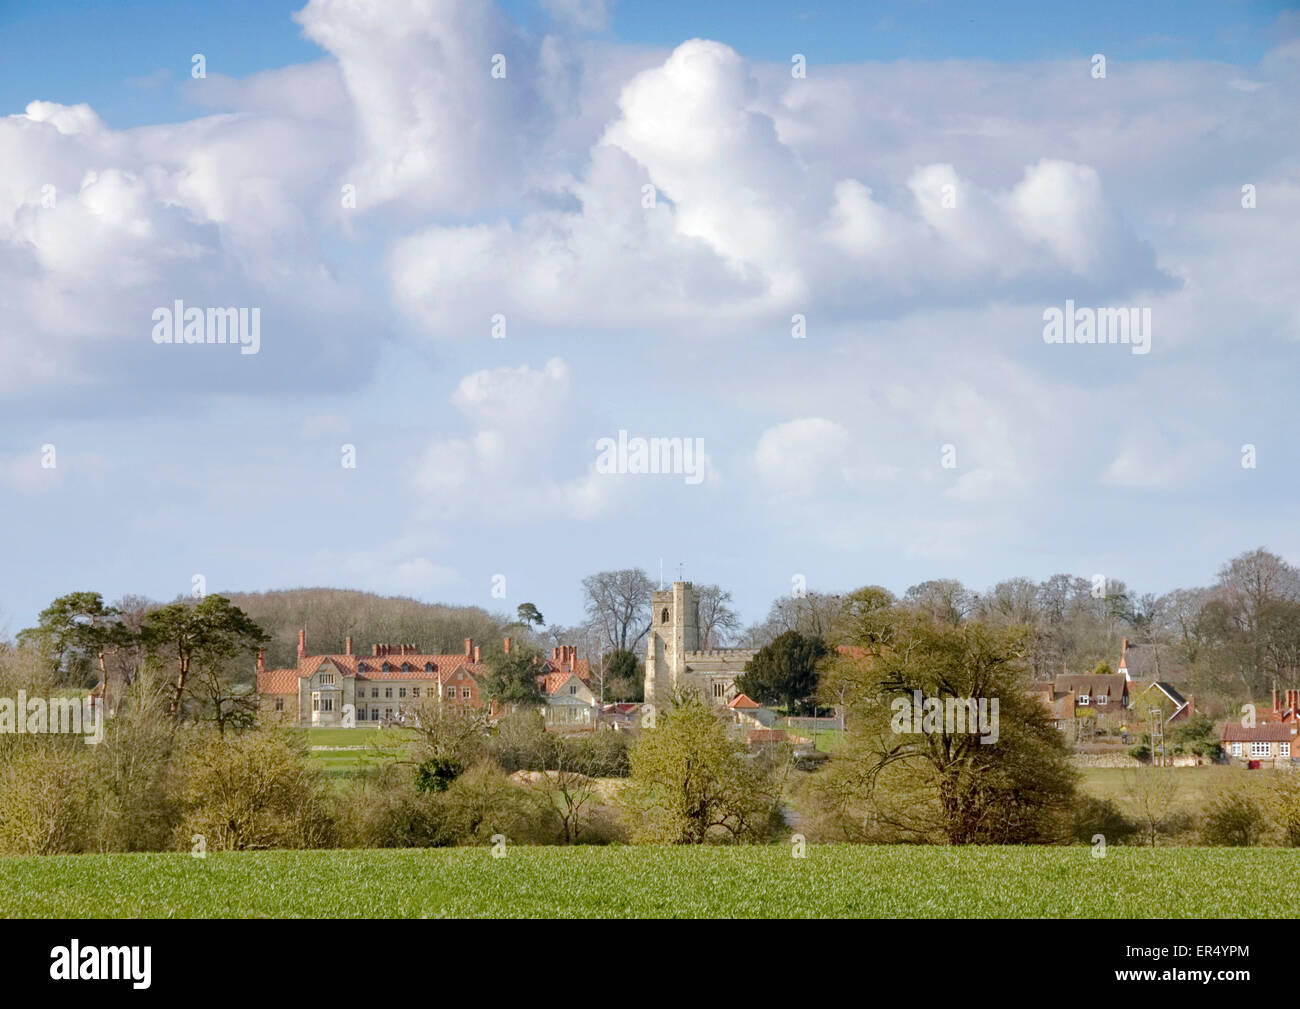 Bucks - villaggio Dinton- visto attraverso i campi - Dinton Hall - San Pietro + la chiesa di St Paul- metà giornata estiva - bella skyscape Foto Stock